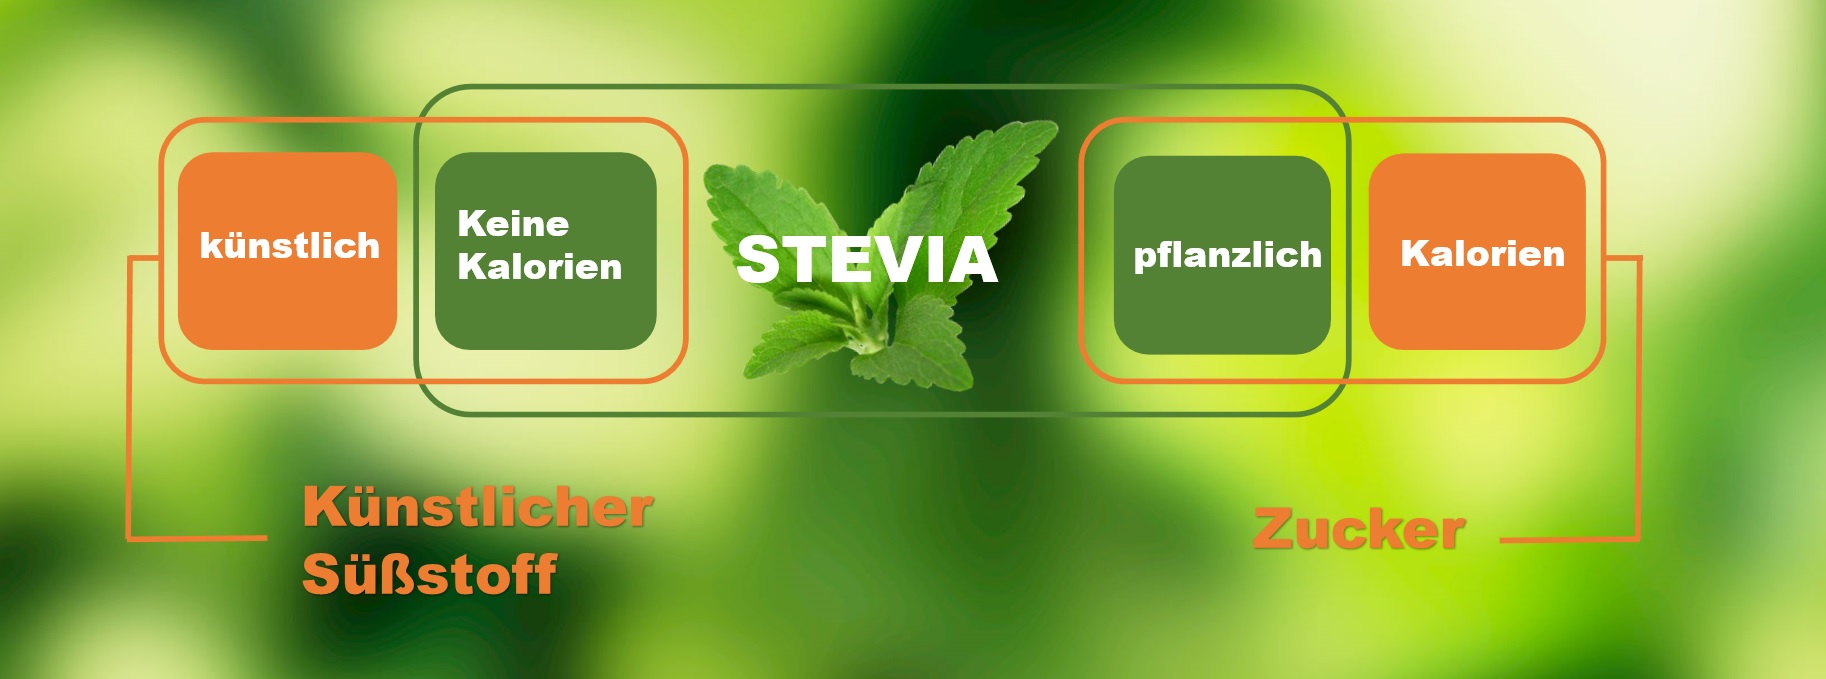 Zucker vs. Stevia stevia süssung